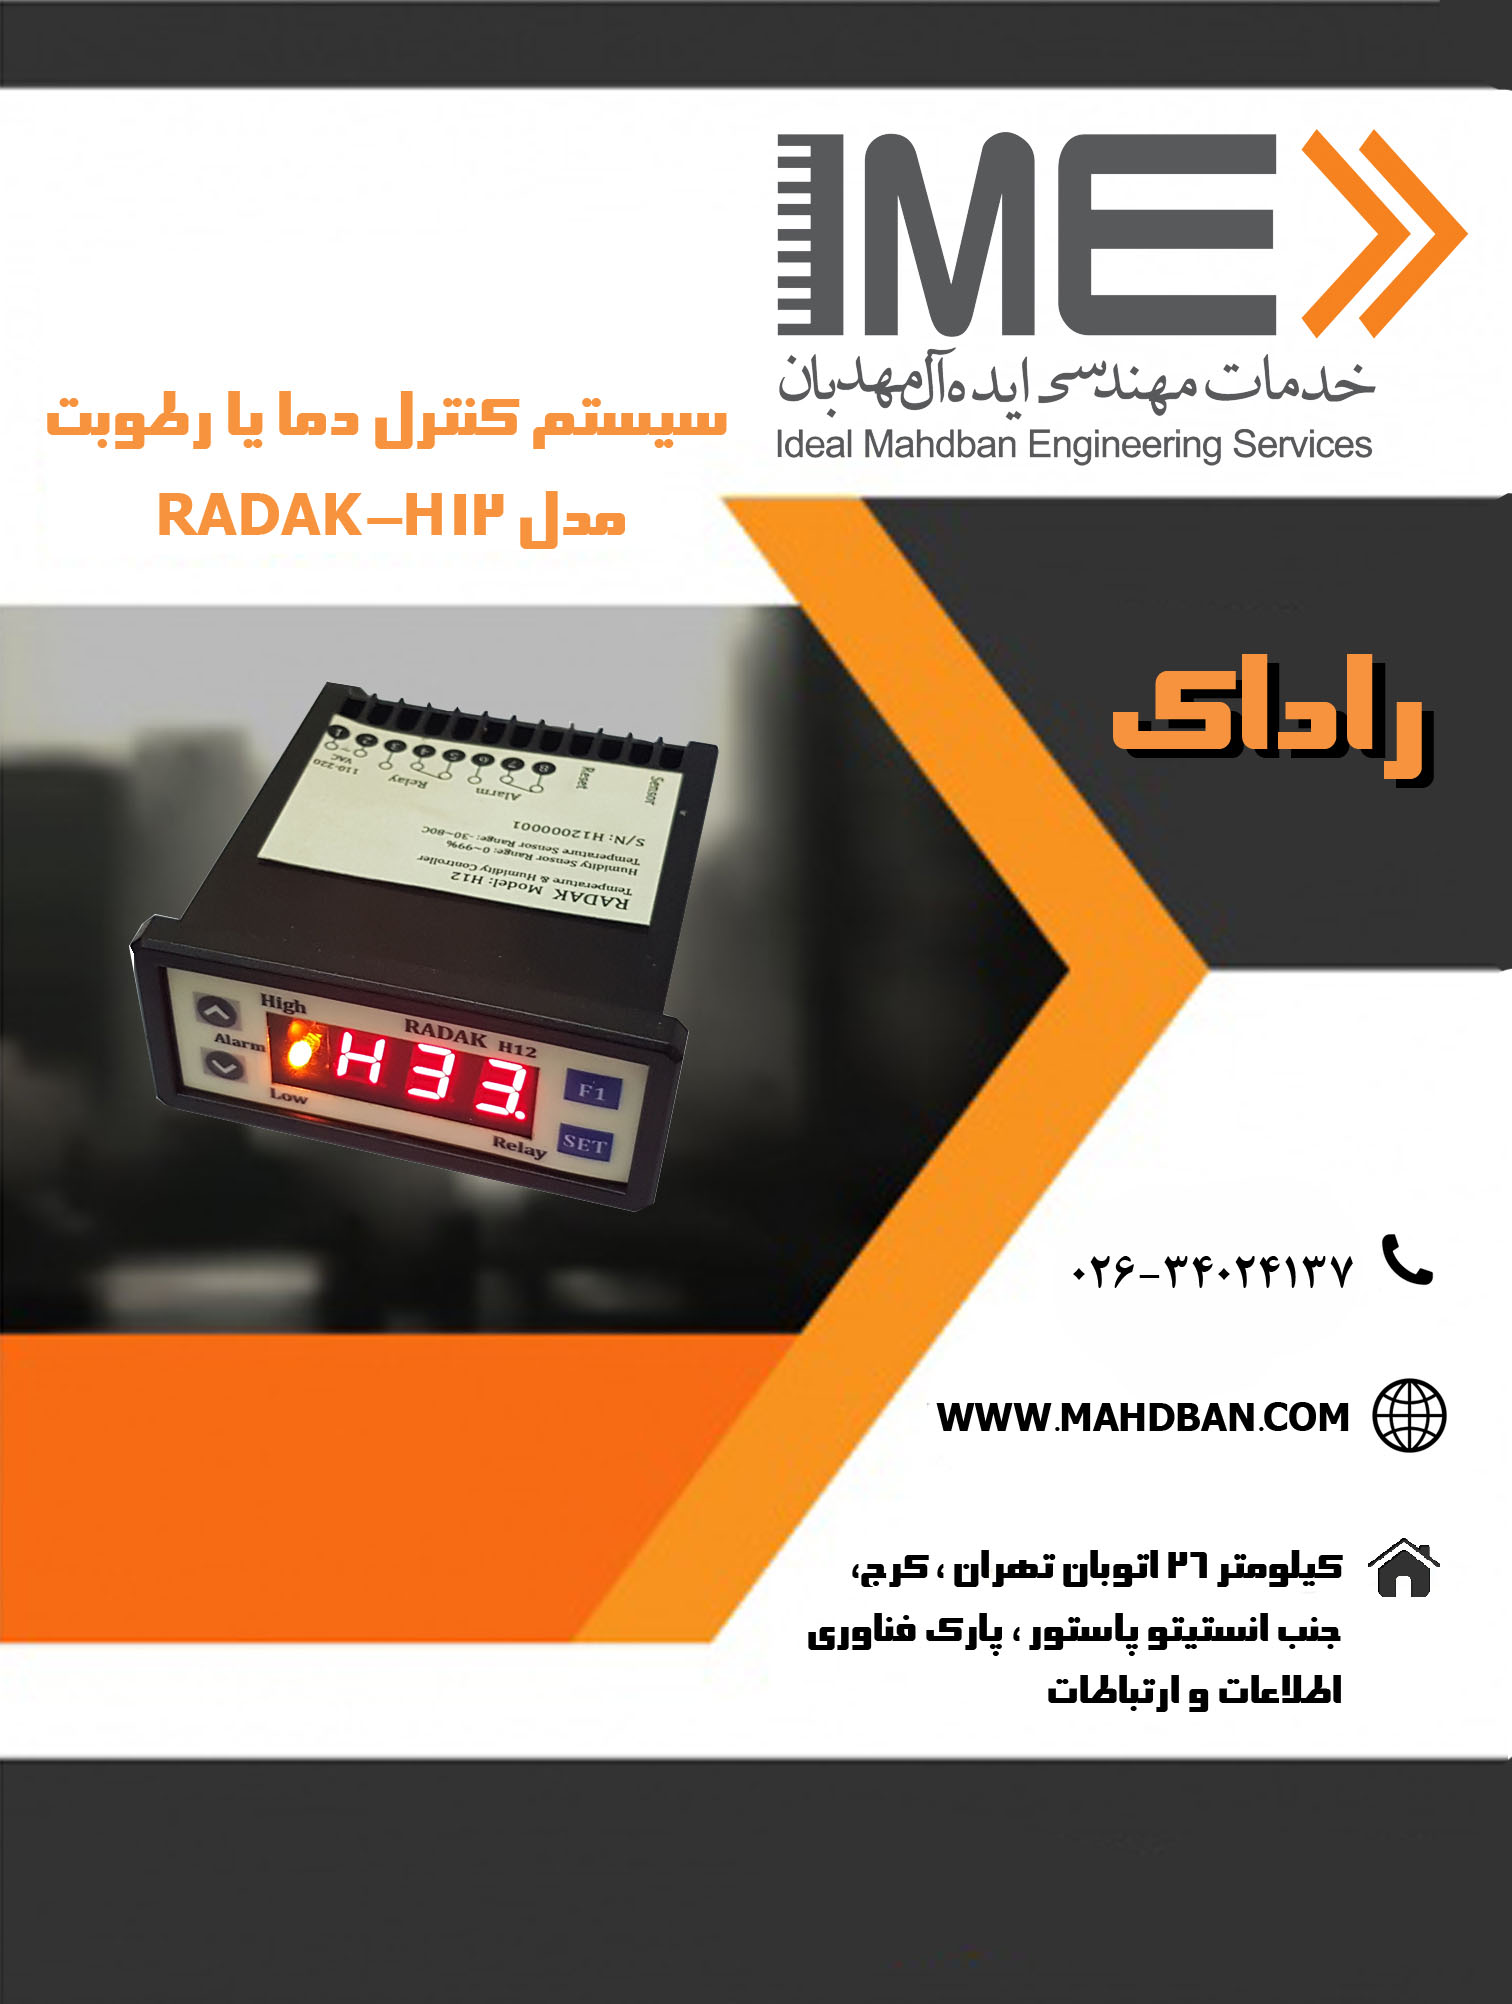 راداک
سیستم کنترل دما یا رطوبت مدل RADAK-H12